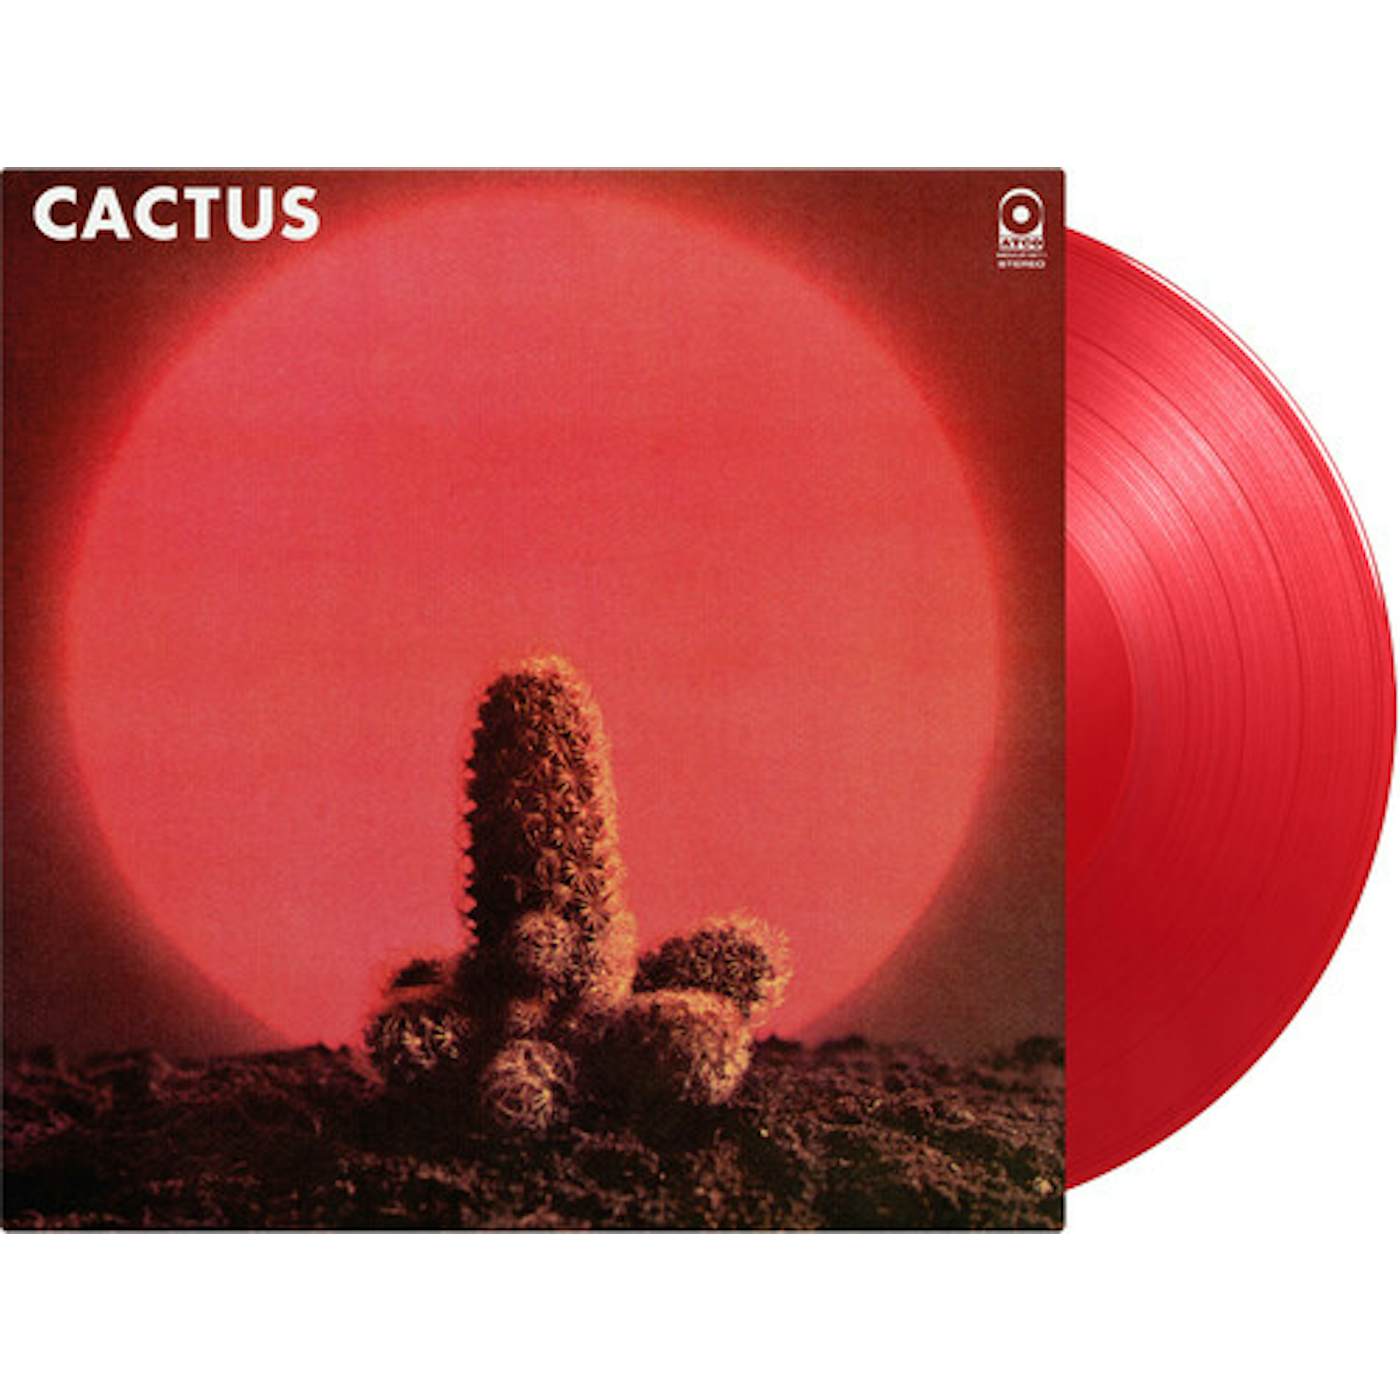 Cactus Vinyl Record